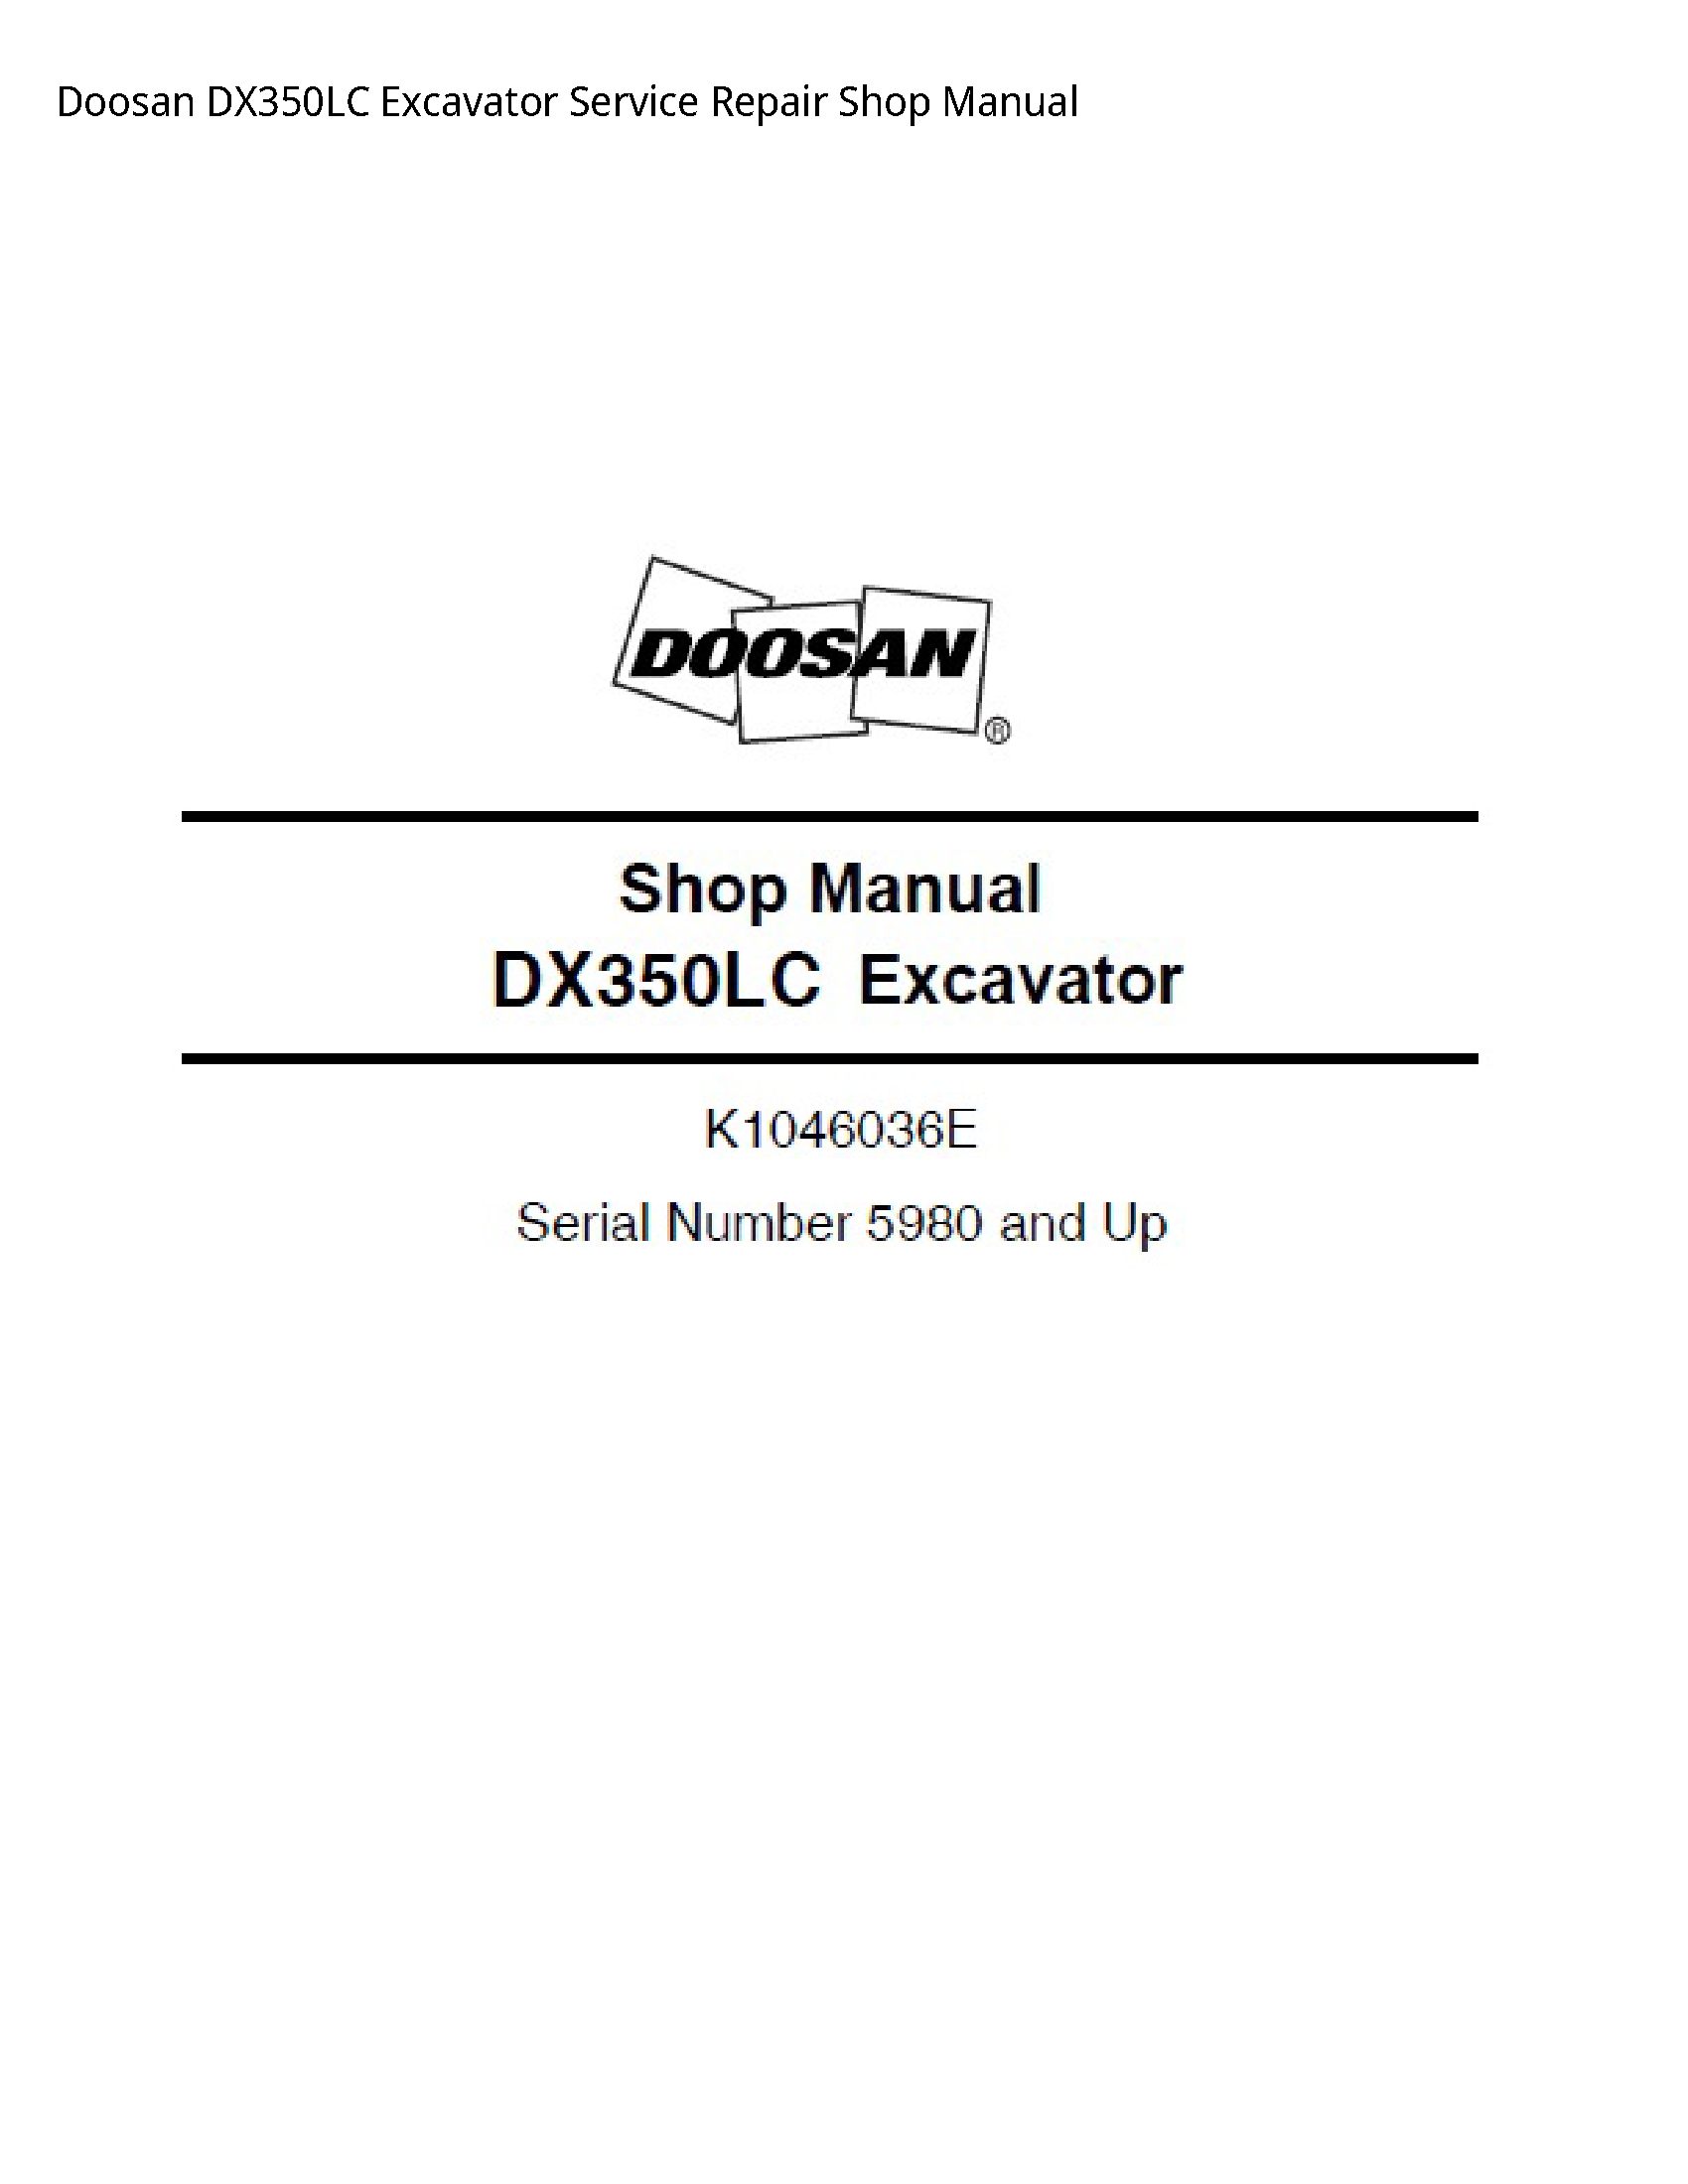 Doosan DX350LC Excavator manual